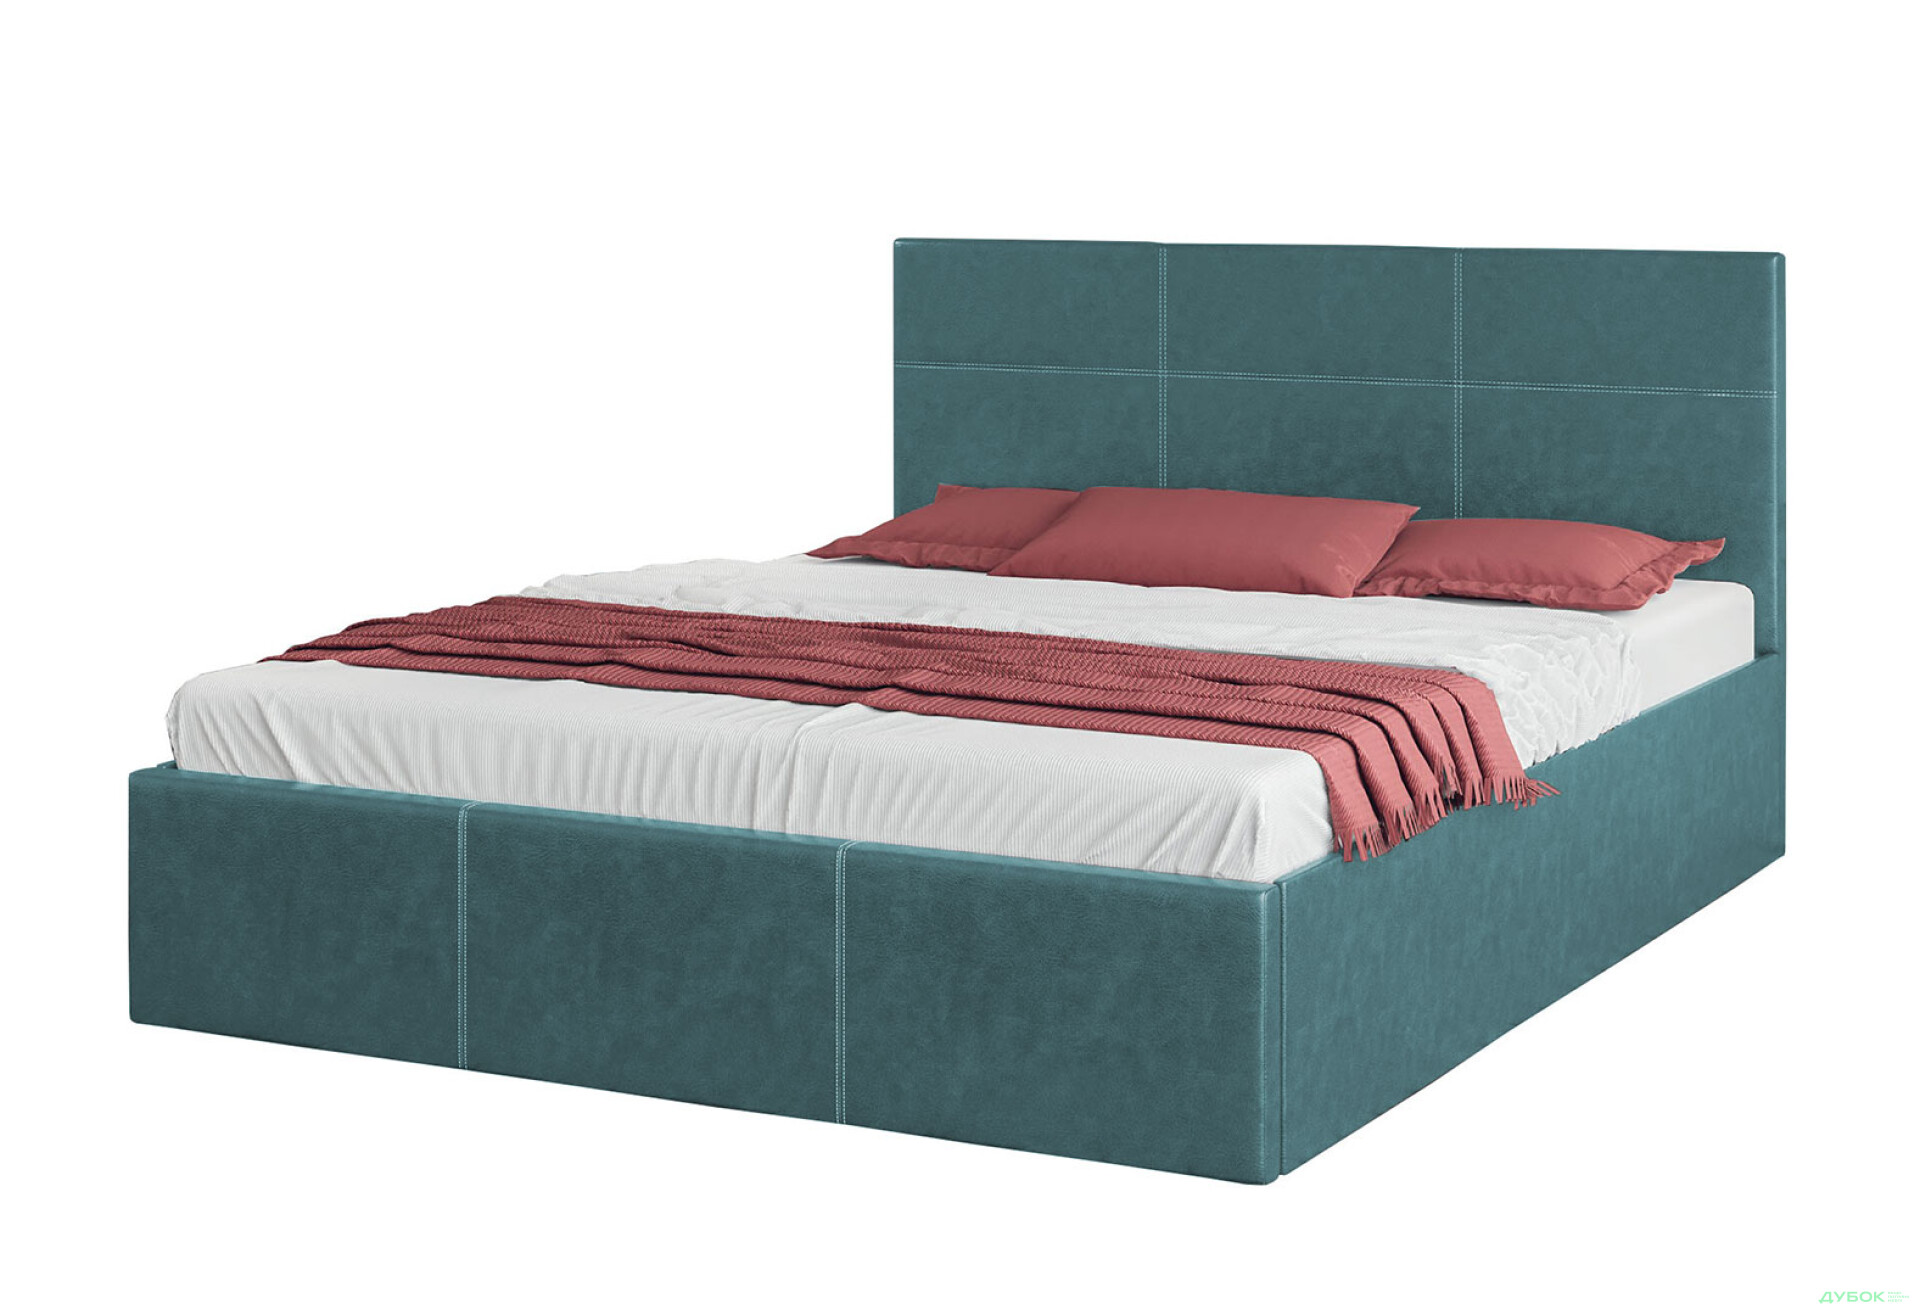 Фото 1 - Ліжко-подіум Світ Меблів Кароліна 5, 160х200 см Тканина Bagira 29